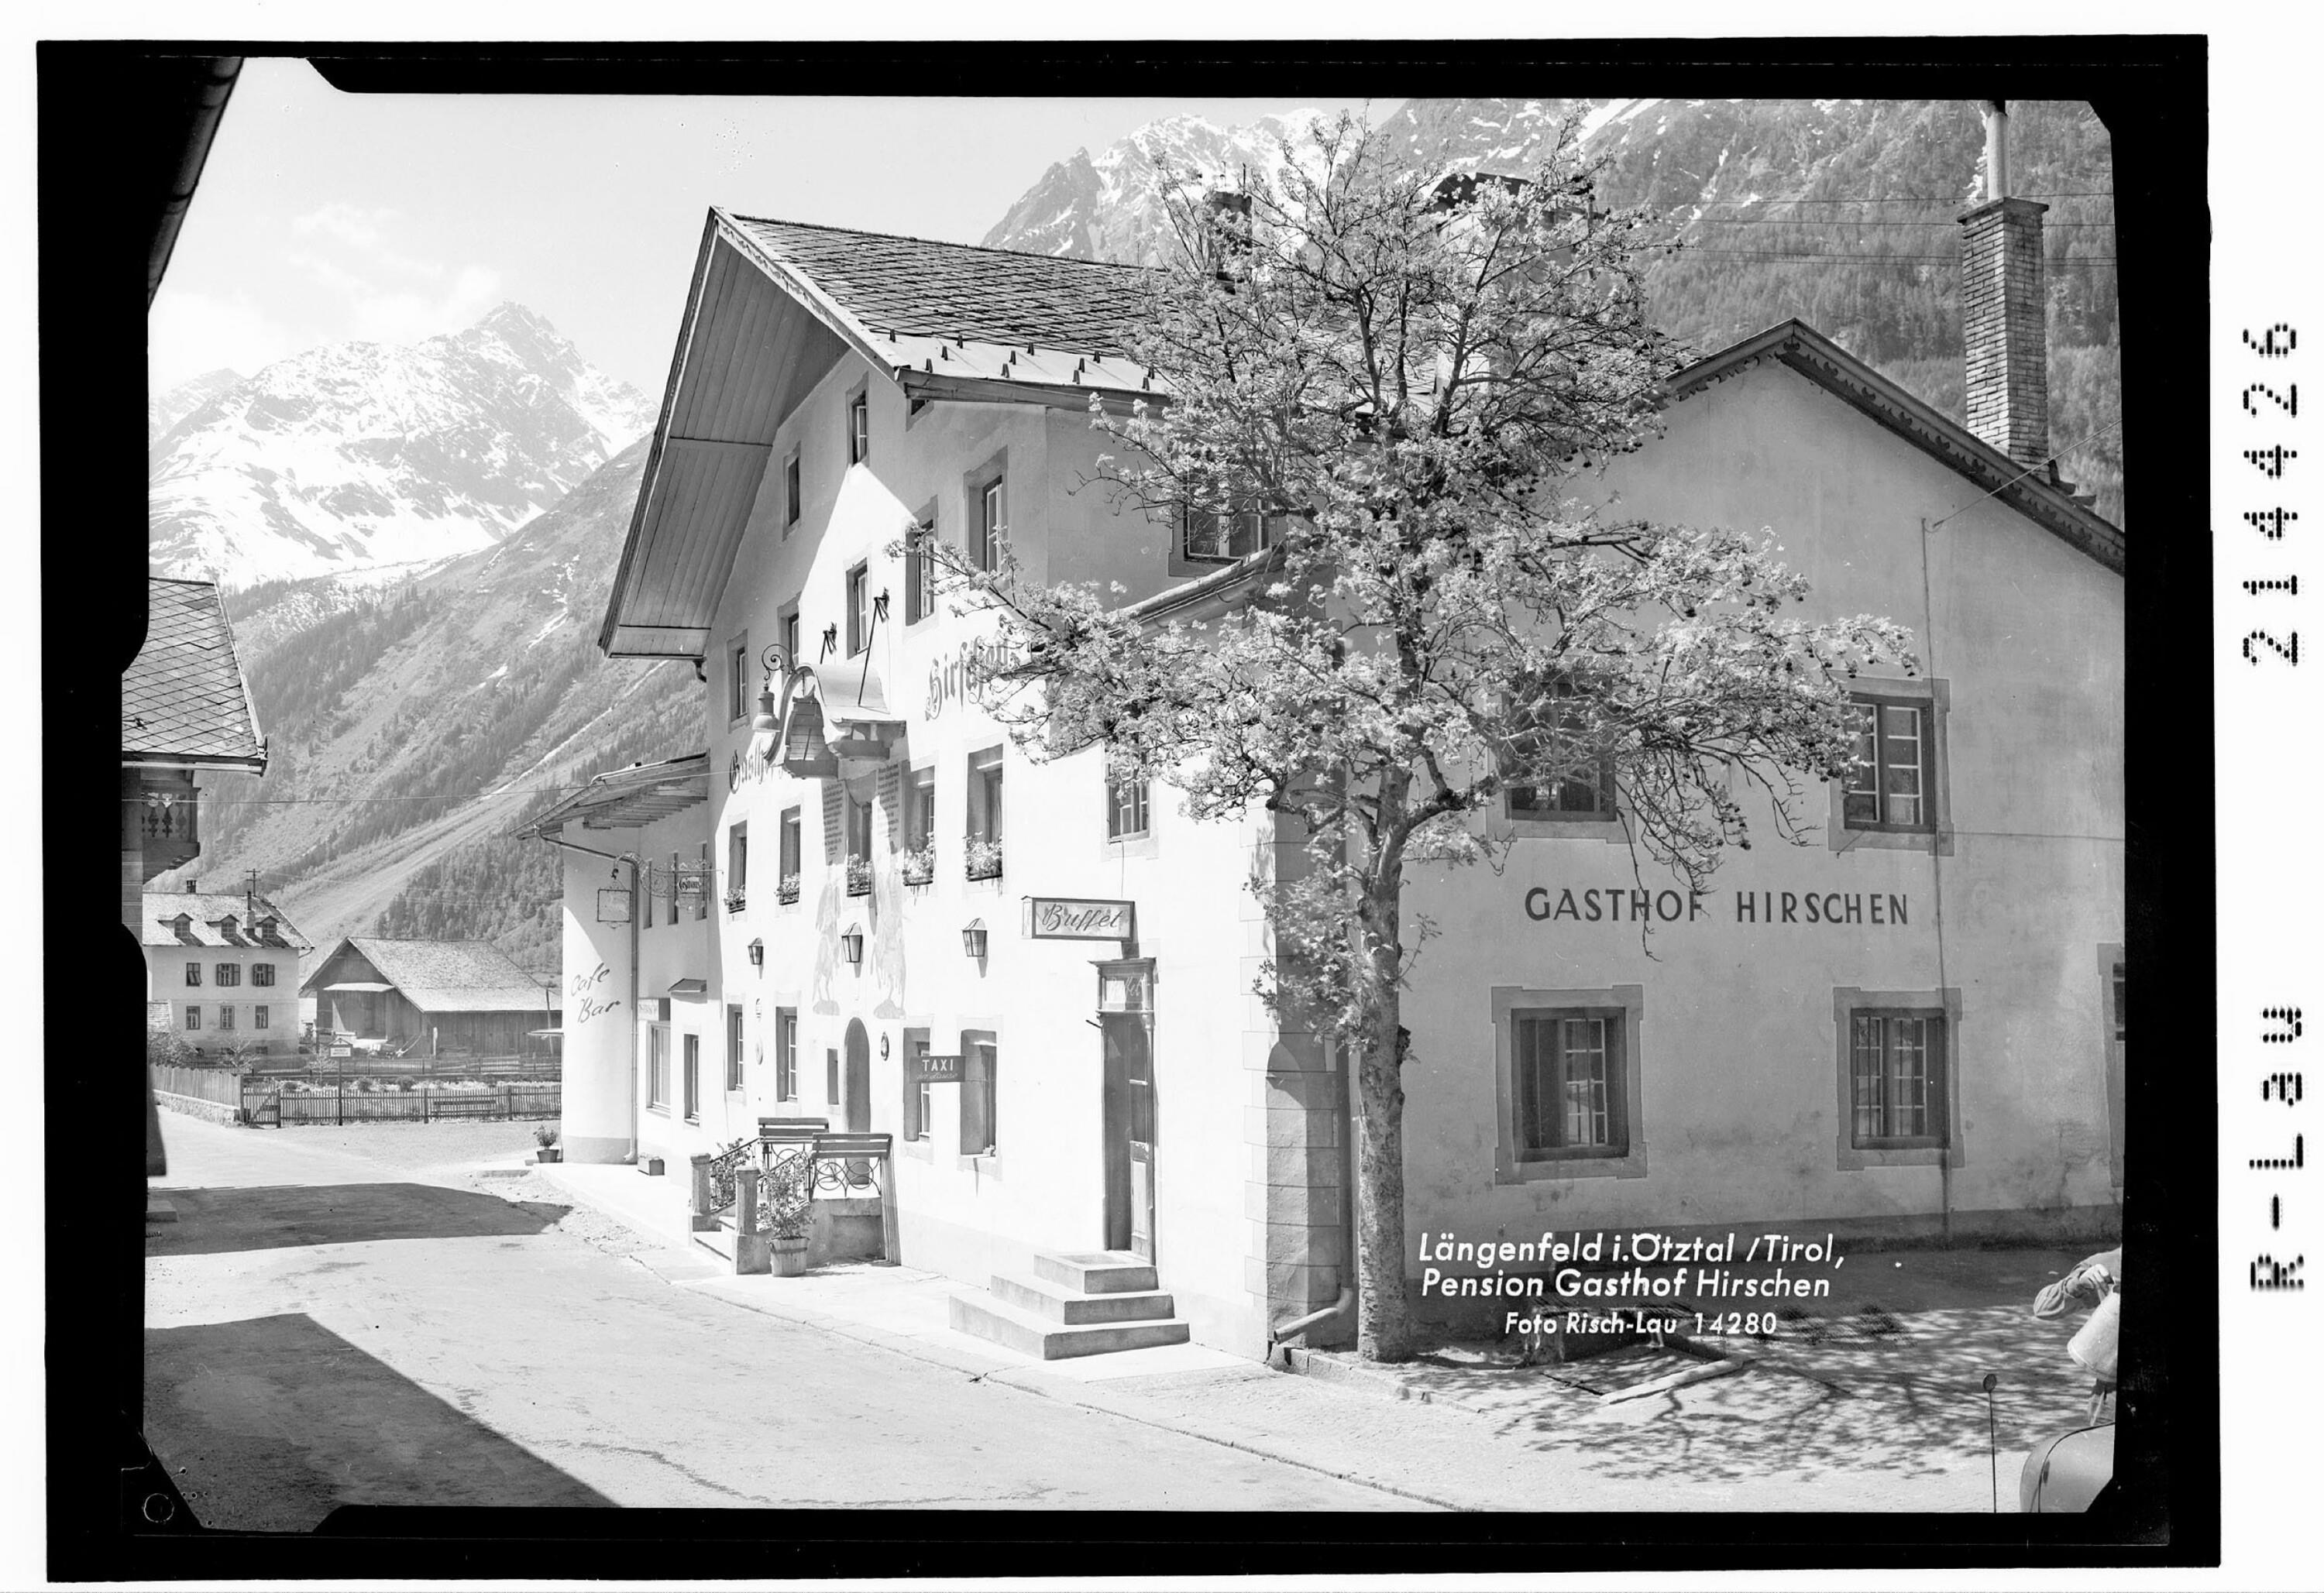 Längenfeld im Ötztal / Tirol Pension Gasthof Hirschen></div>


    <hr>
    <div class=